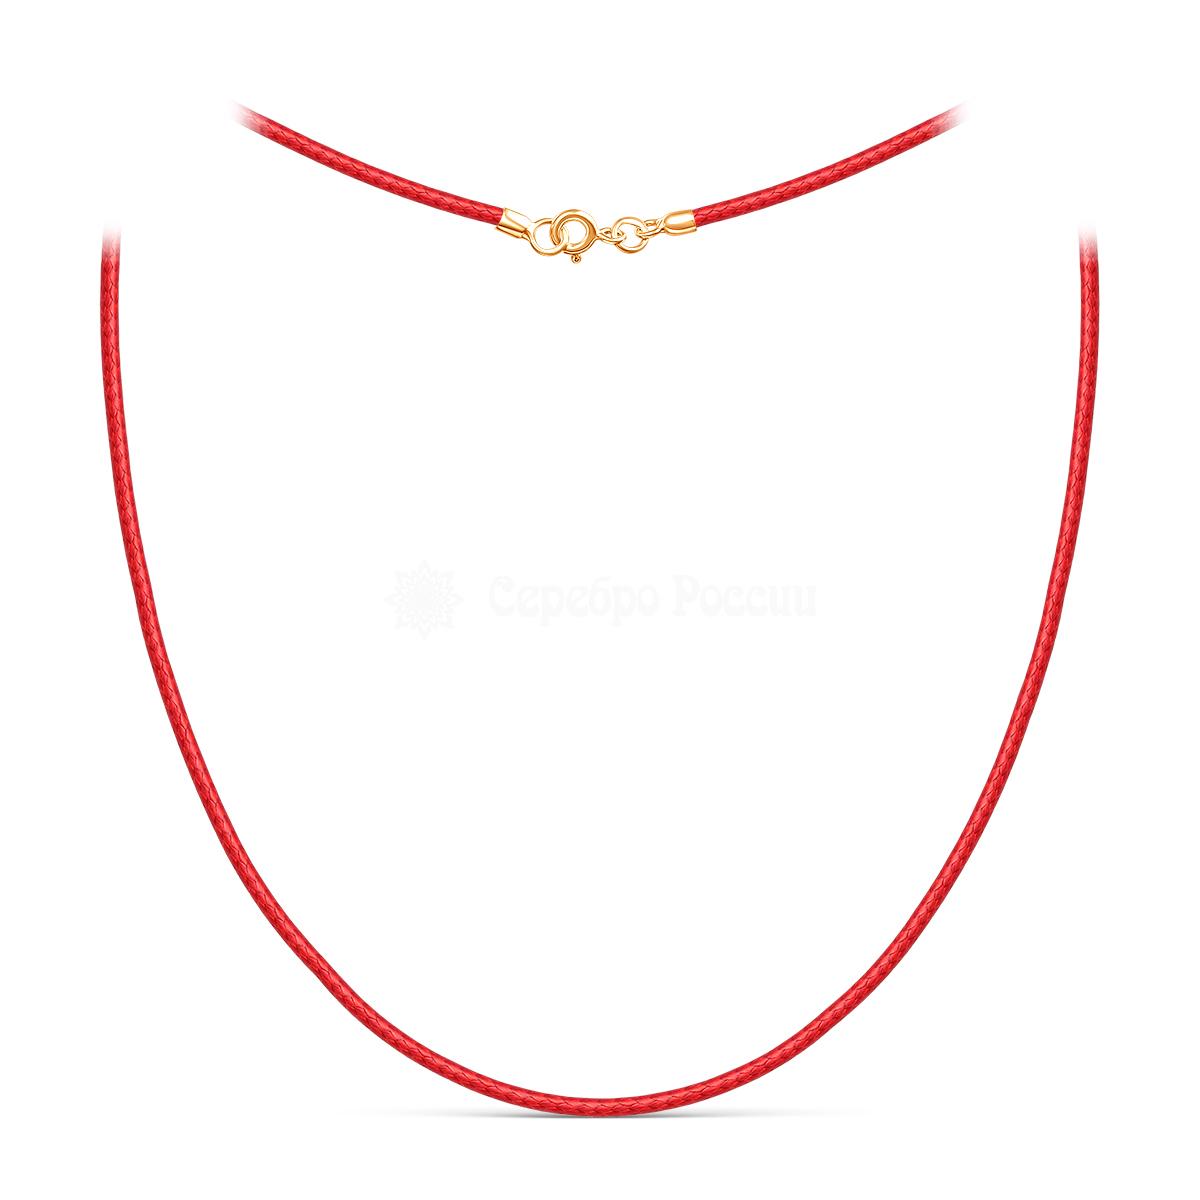 Шнурок текстильный (вощёный) красный с замком из золочёного серебра хш-003з-01красный хш-003з-01красный